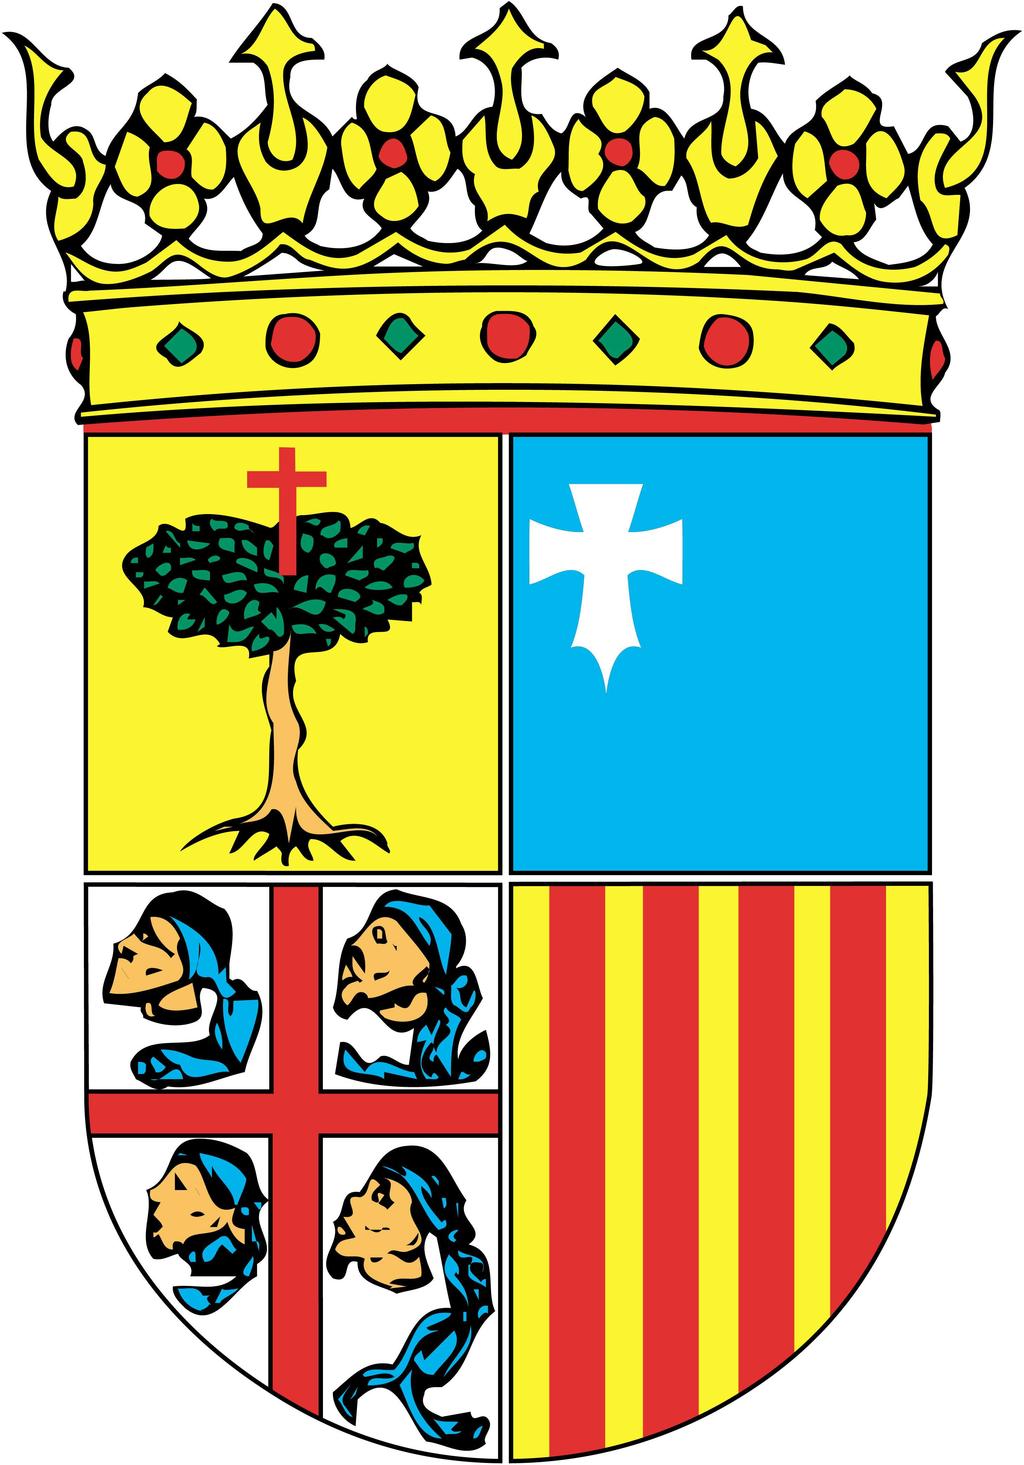 RE 111/2014 Acuerdo 73/2014, de 21 de noviembre de 2014, del Tribunal Administrativo de Contratos Públicos de Aragón, por el que se resuelve el recurso especial, interpuesto por ASSECO SPAIN, S.